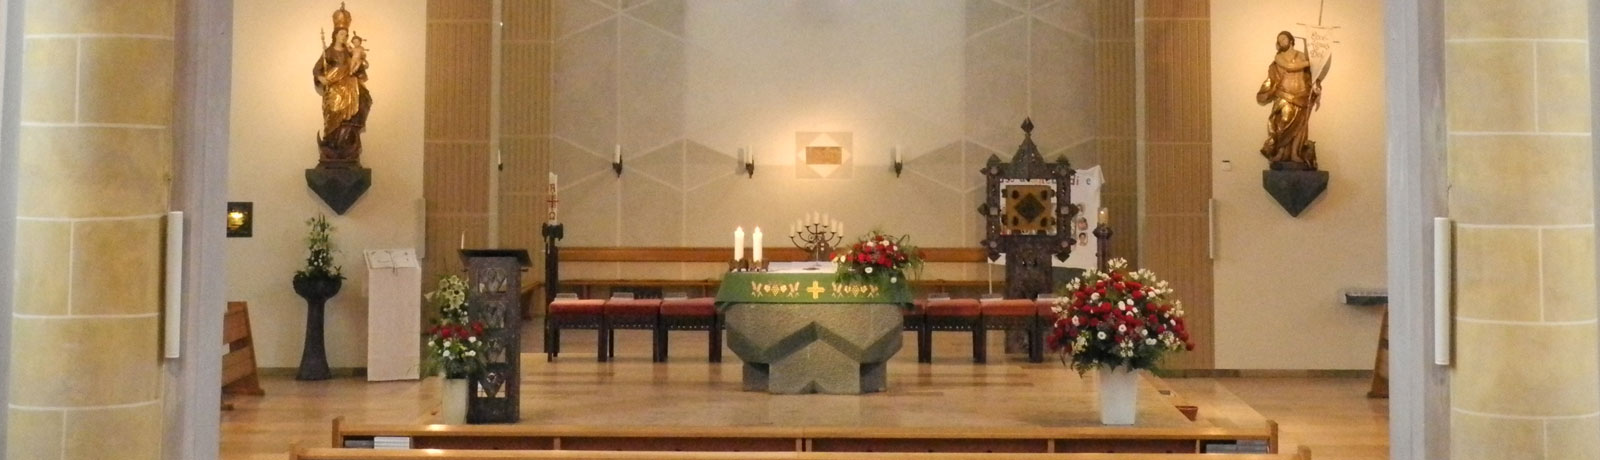 St. Johannes - Altarraum